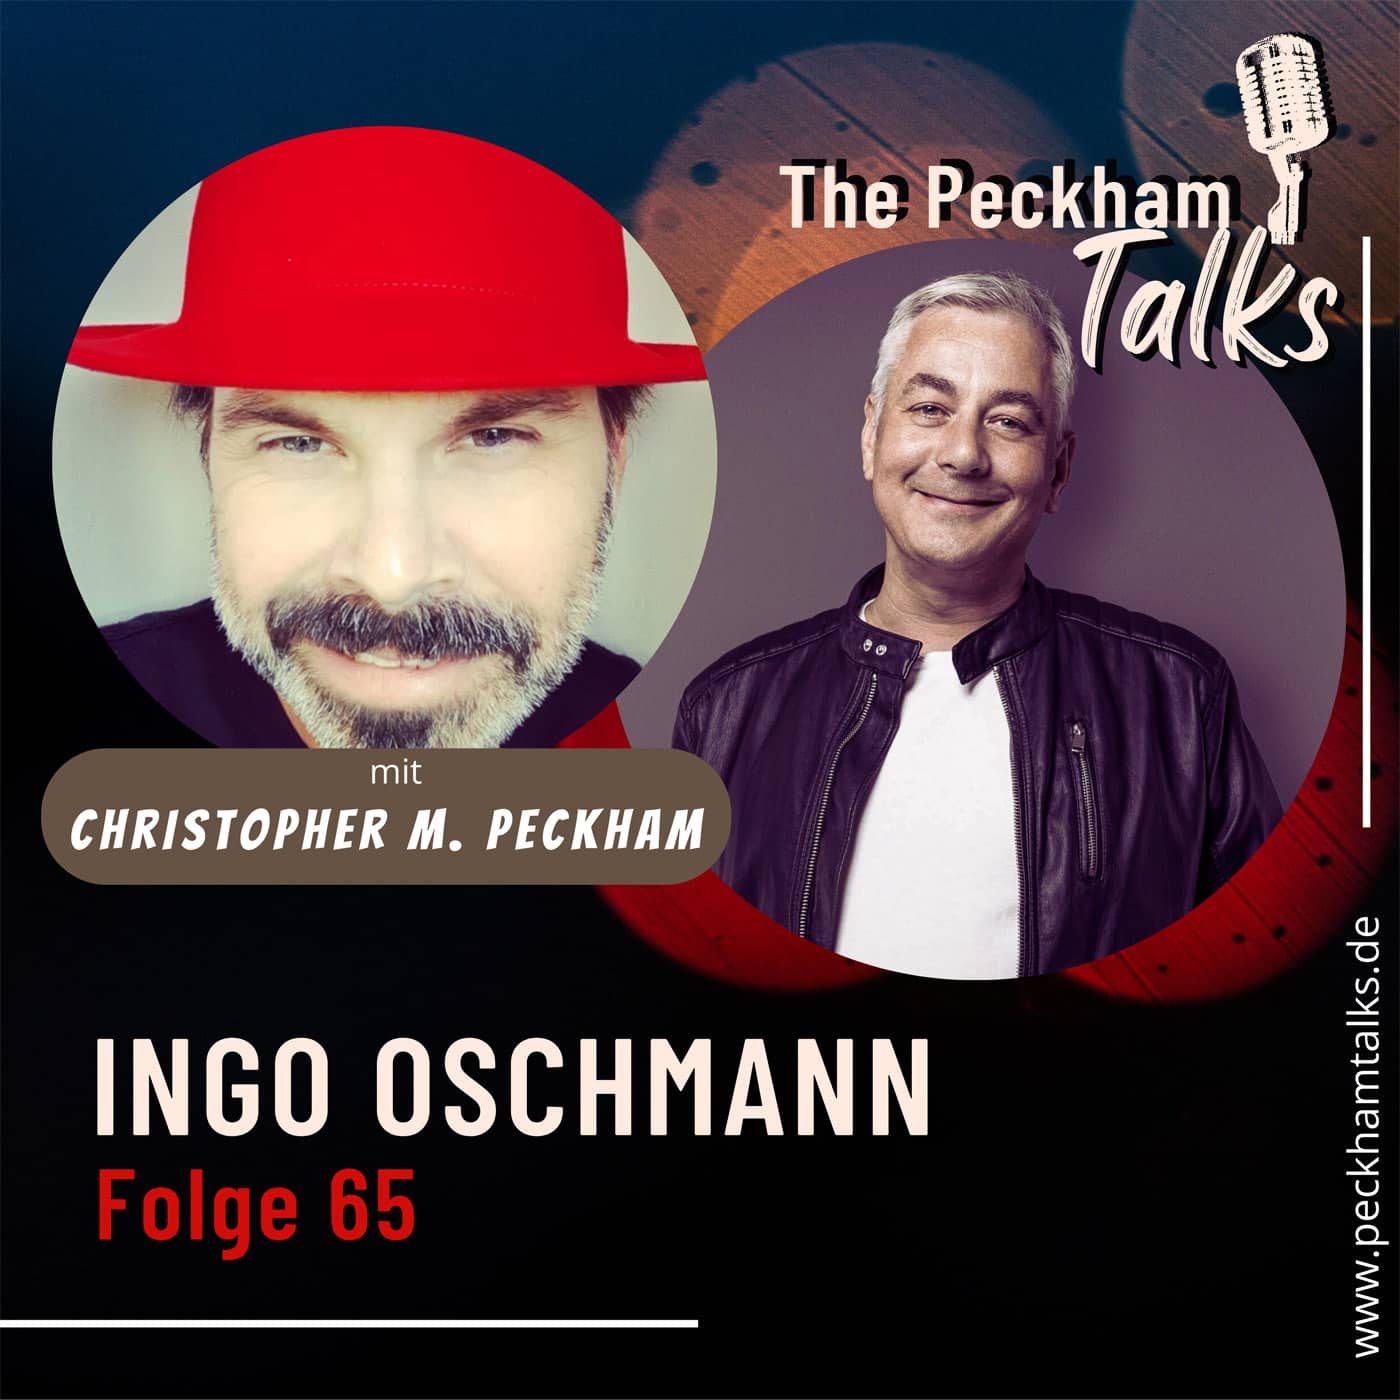 Ingo Oschmann - Der soziale Entertainer